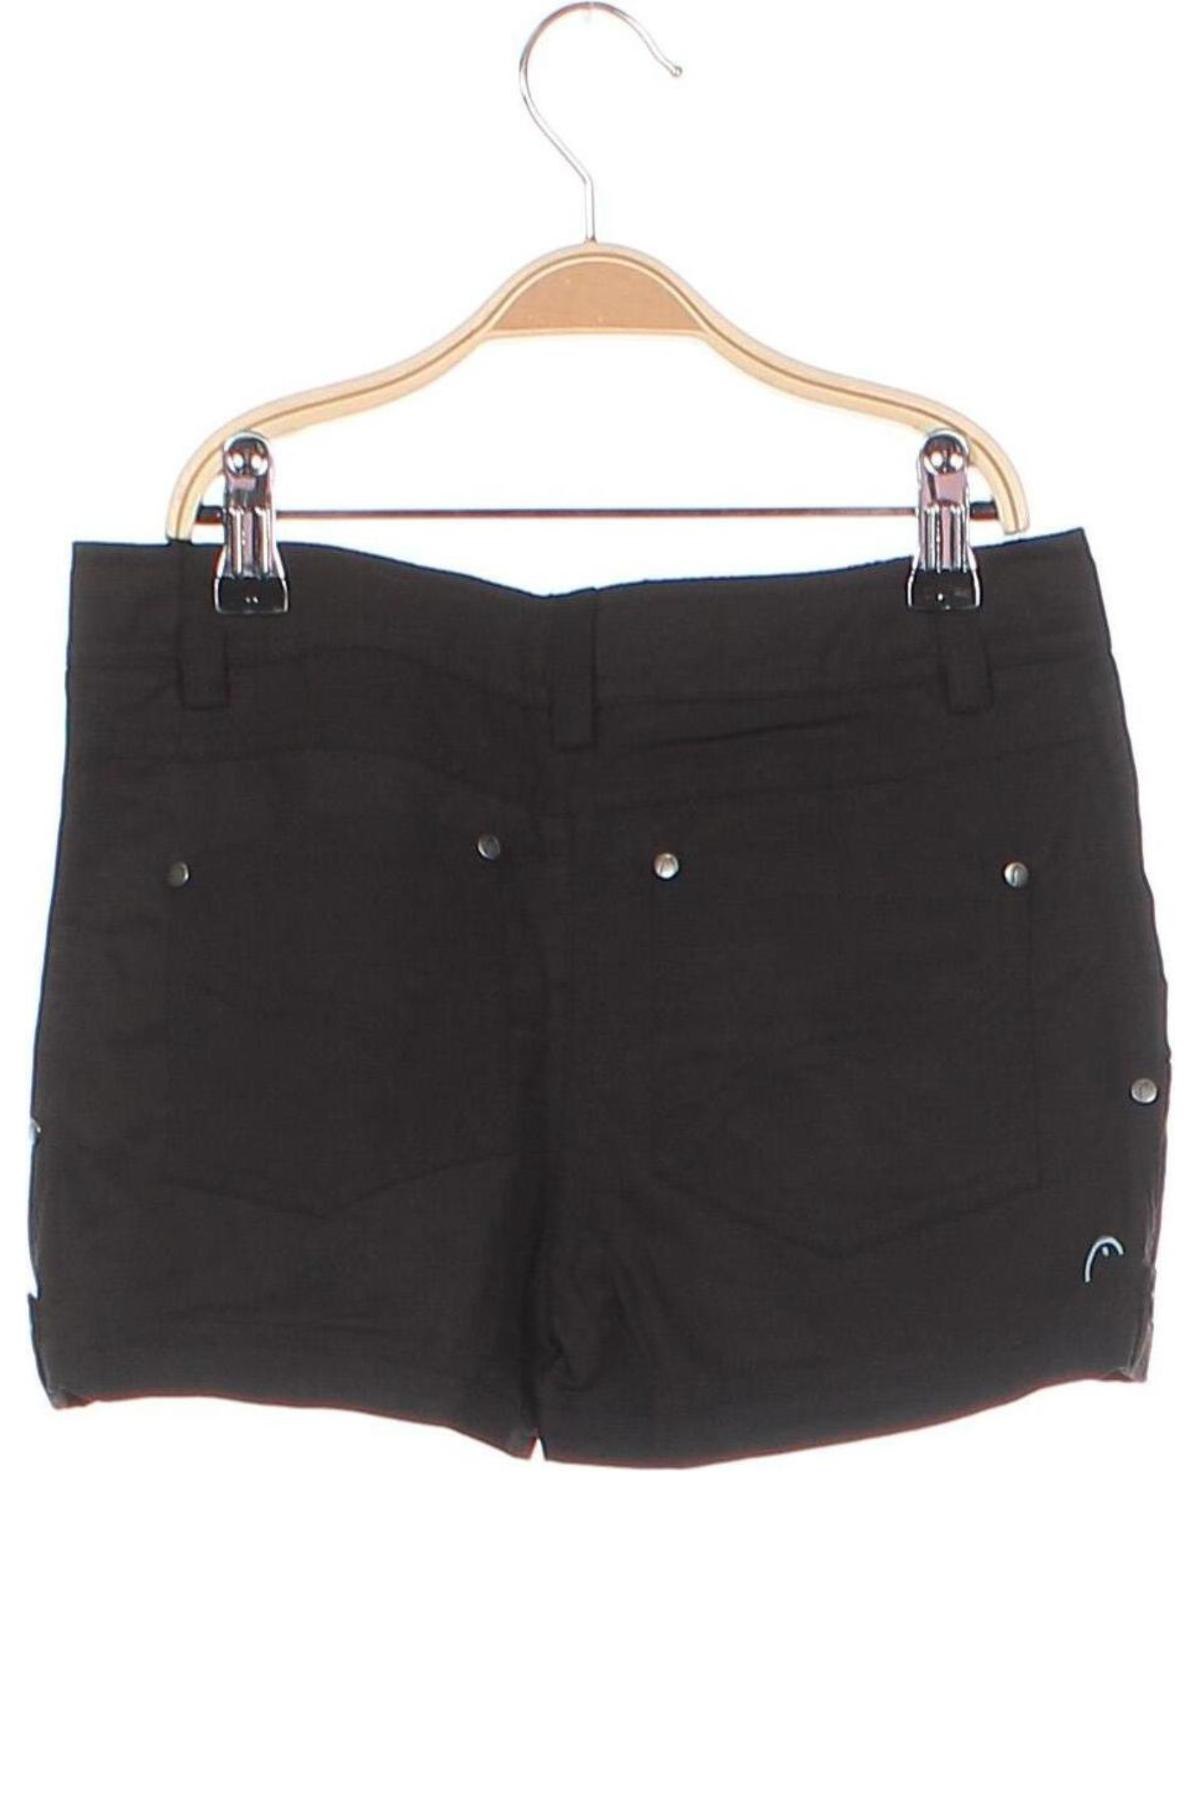 Pantaloni scurți pentru copii Head, Mărime 7-8y/ 128-134 cm, Culoare Negru, Preț 32,60 Lei